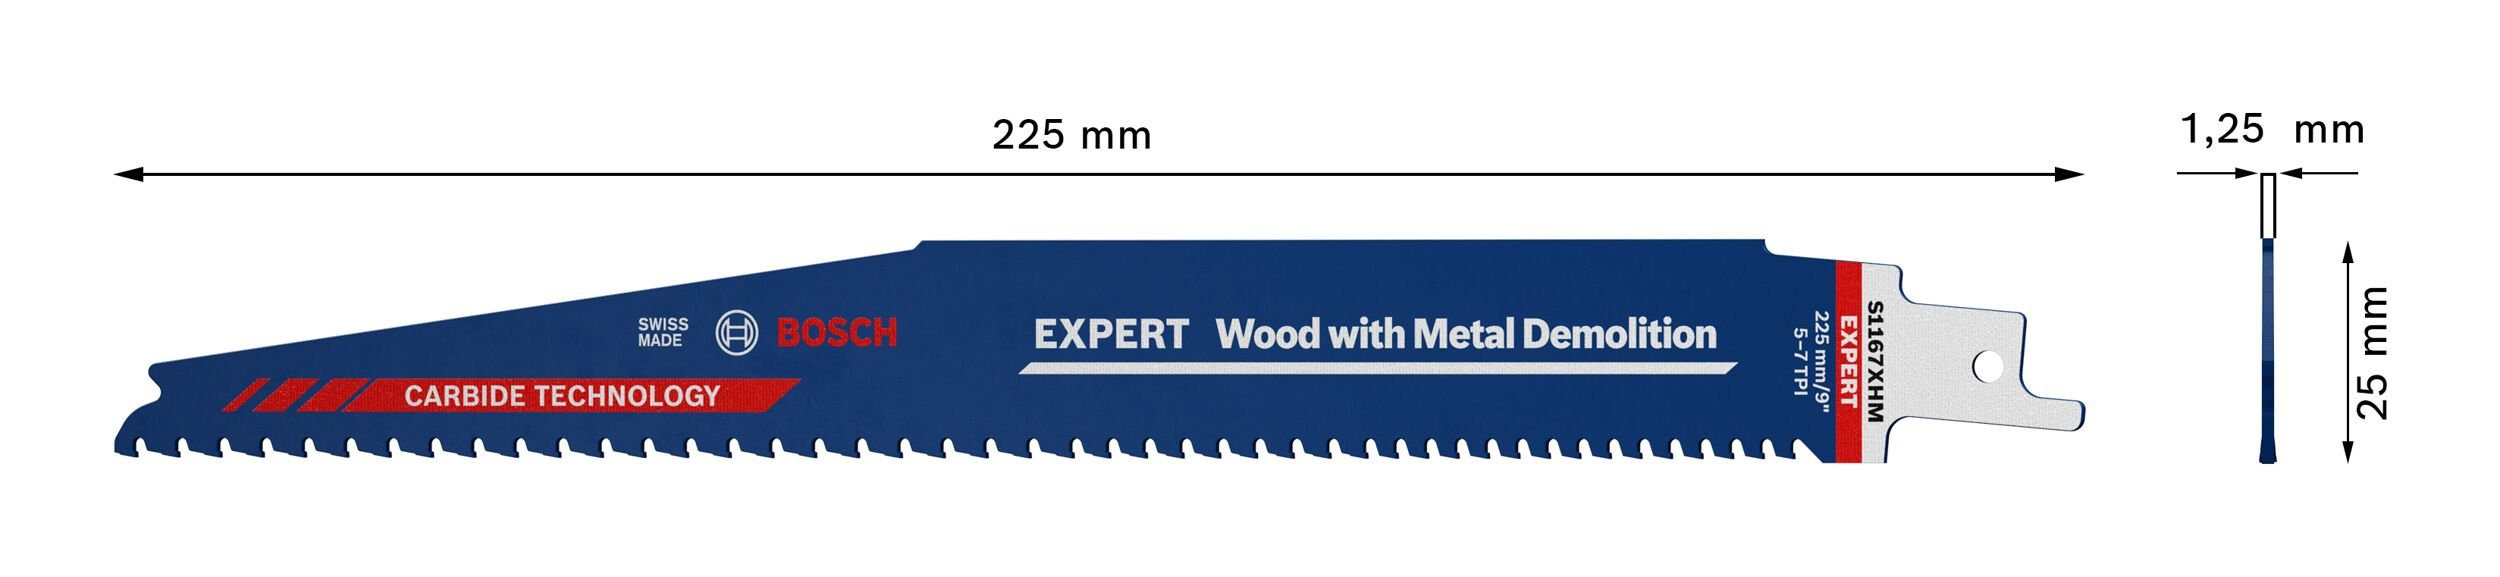 XHM with Säbelsägeblatt Expert Wood Metal Demolition Endurance 1167 Expert BOSCH S Demolition, for Metal Wood and